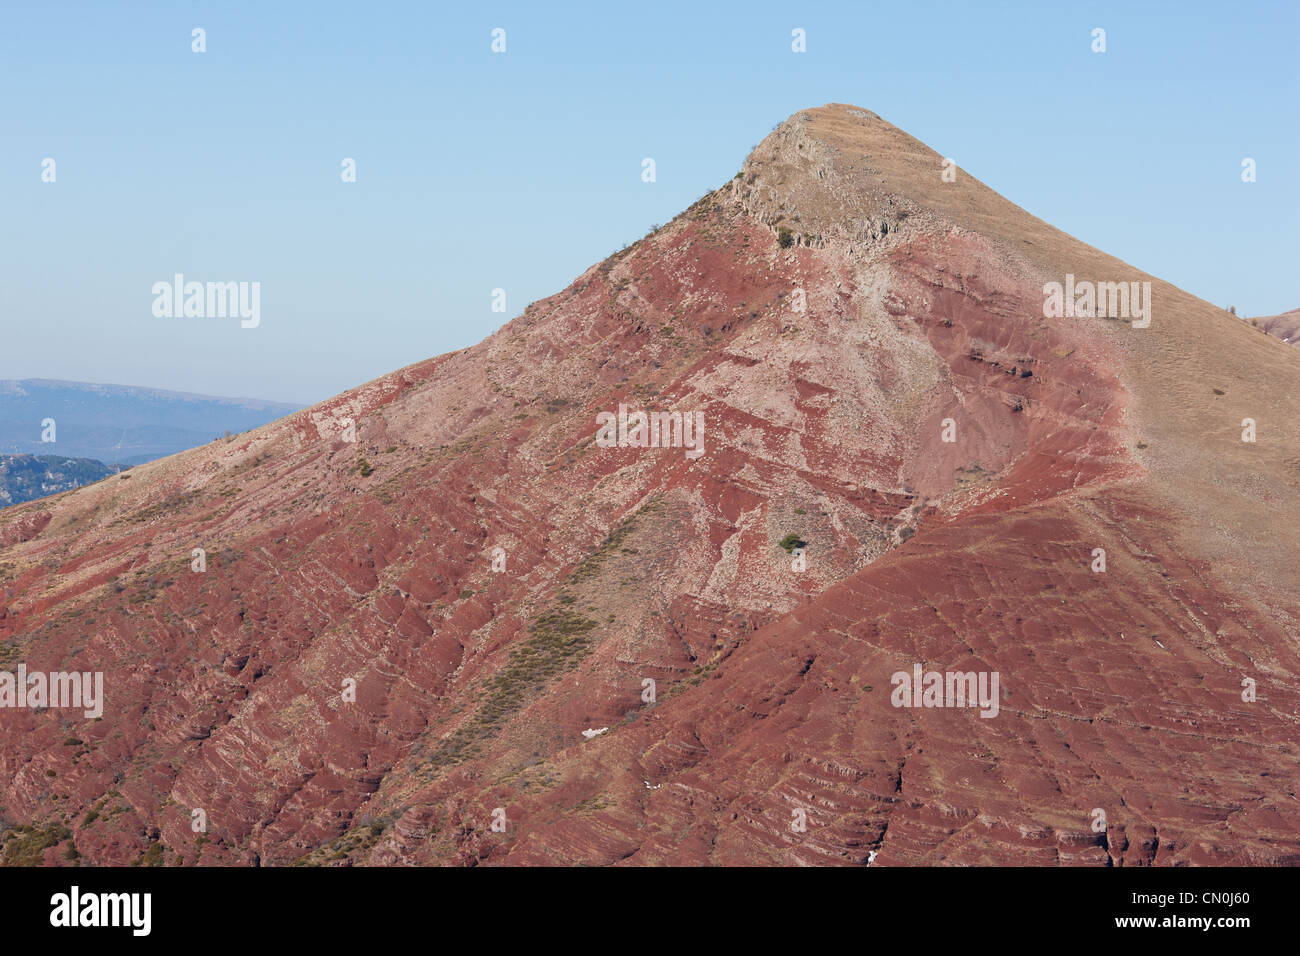 VUE AÉRIENNE.Tête de Rigaud, sommet de 1907 mètres de haut au-dessus de la gorge de Cians.Son rouge distinctif est dû à son rocher pélite.Alpes-Maritimes, France. Banque D'Images